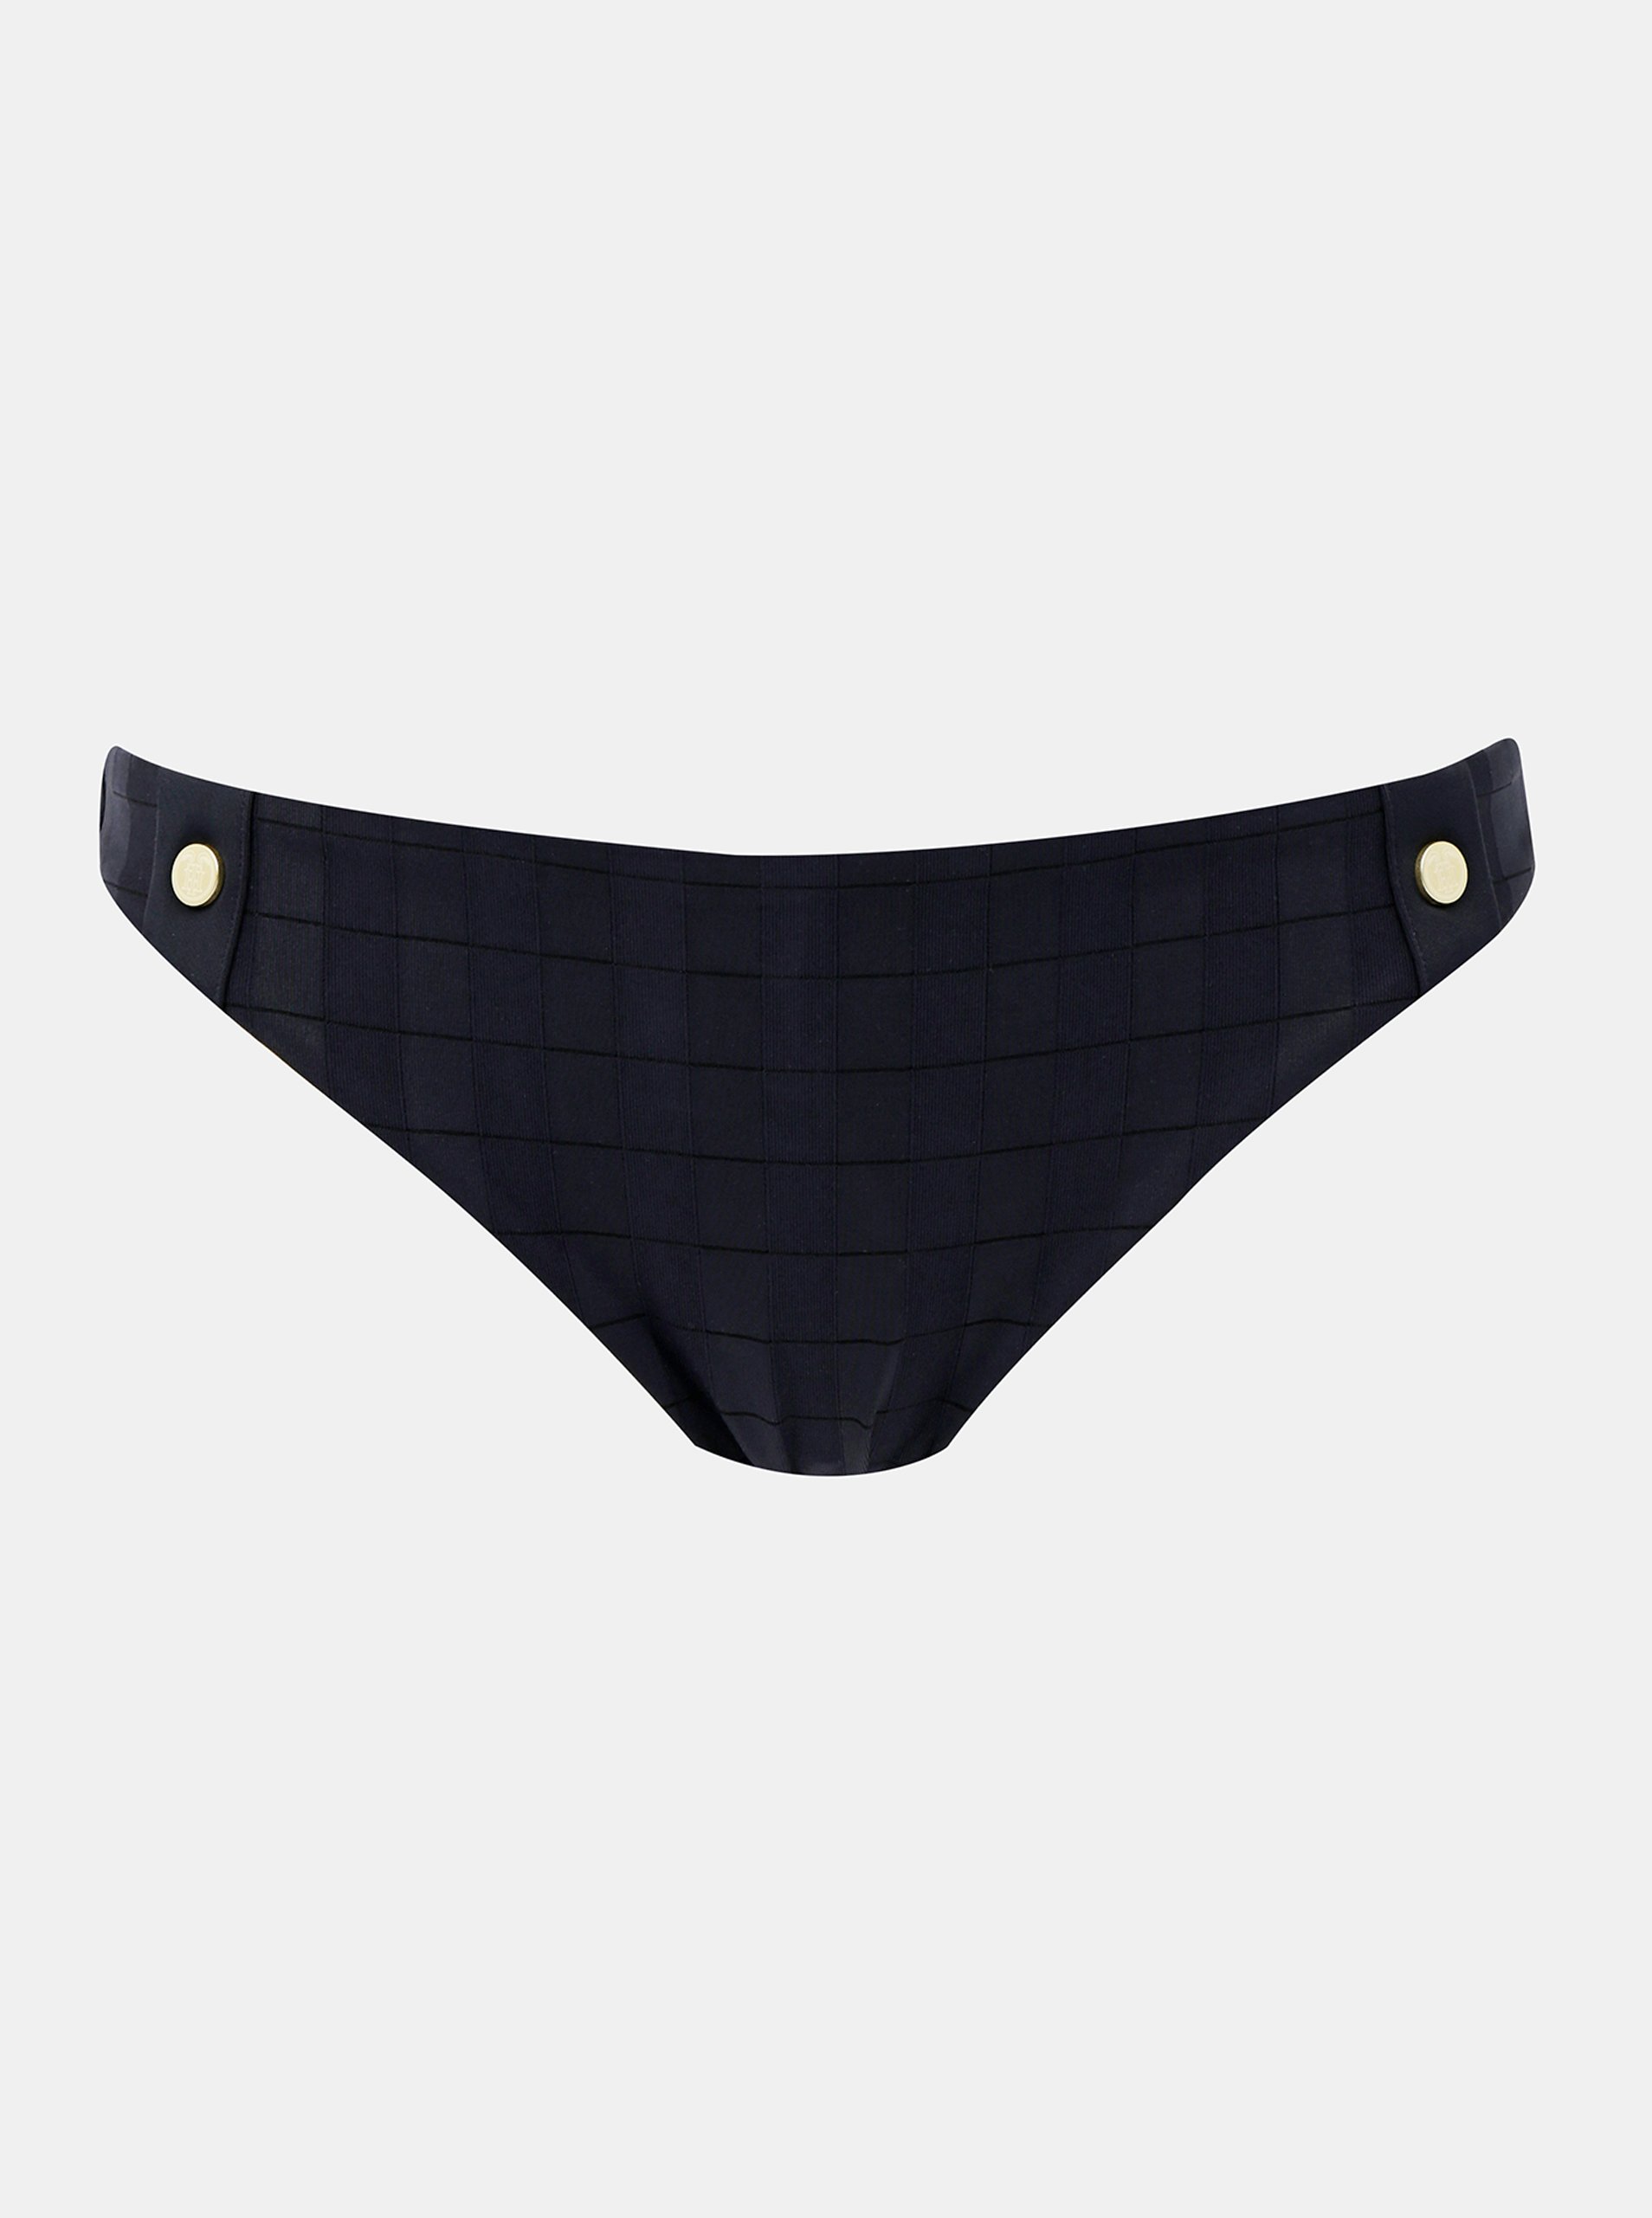 Lacno Tommy Hilfiger tmavomodrý elegantný spodný diel plaviek Bikini